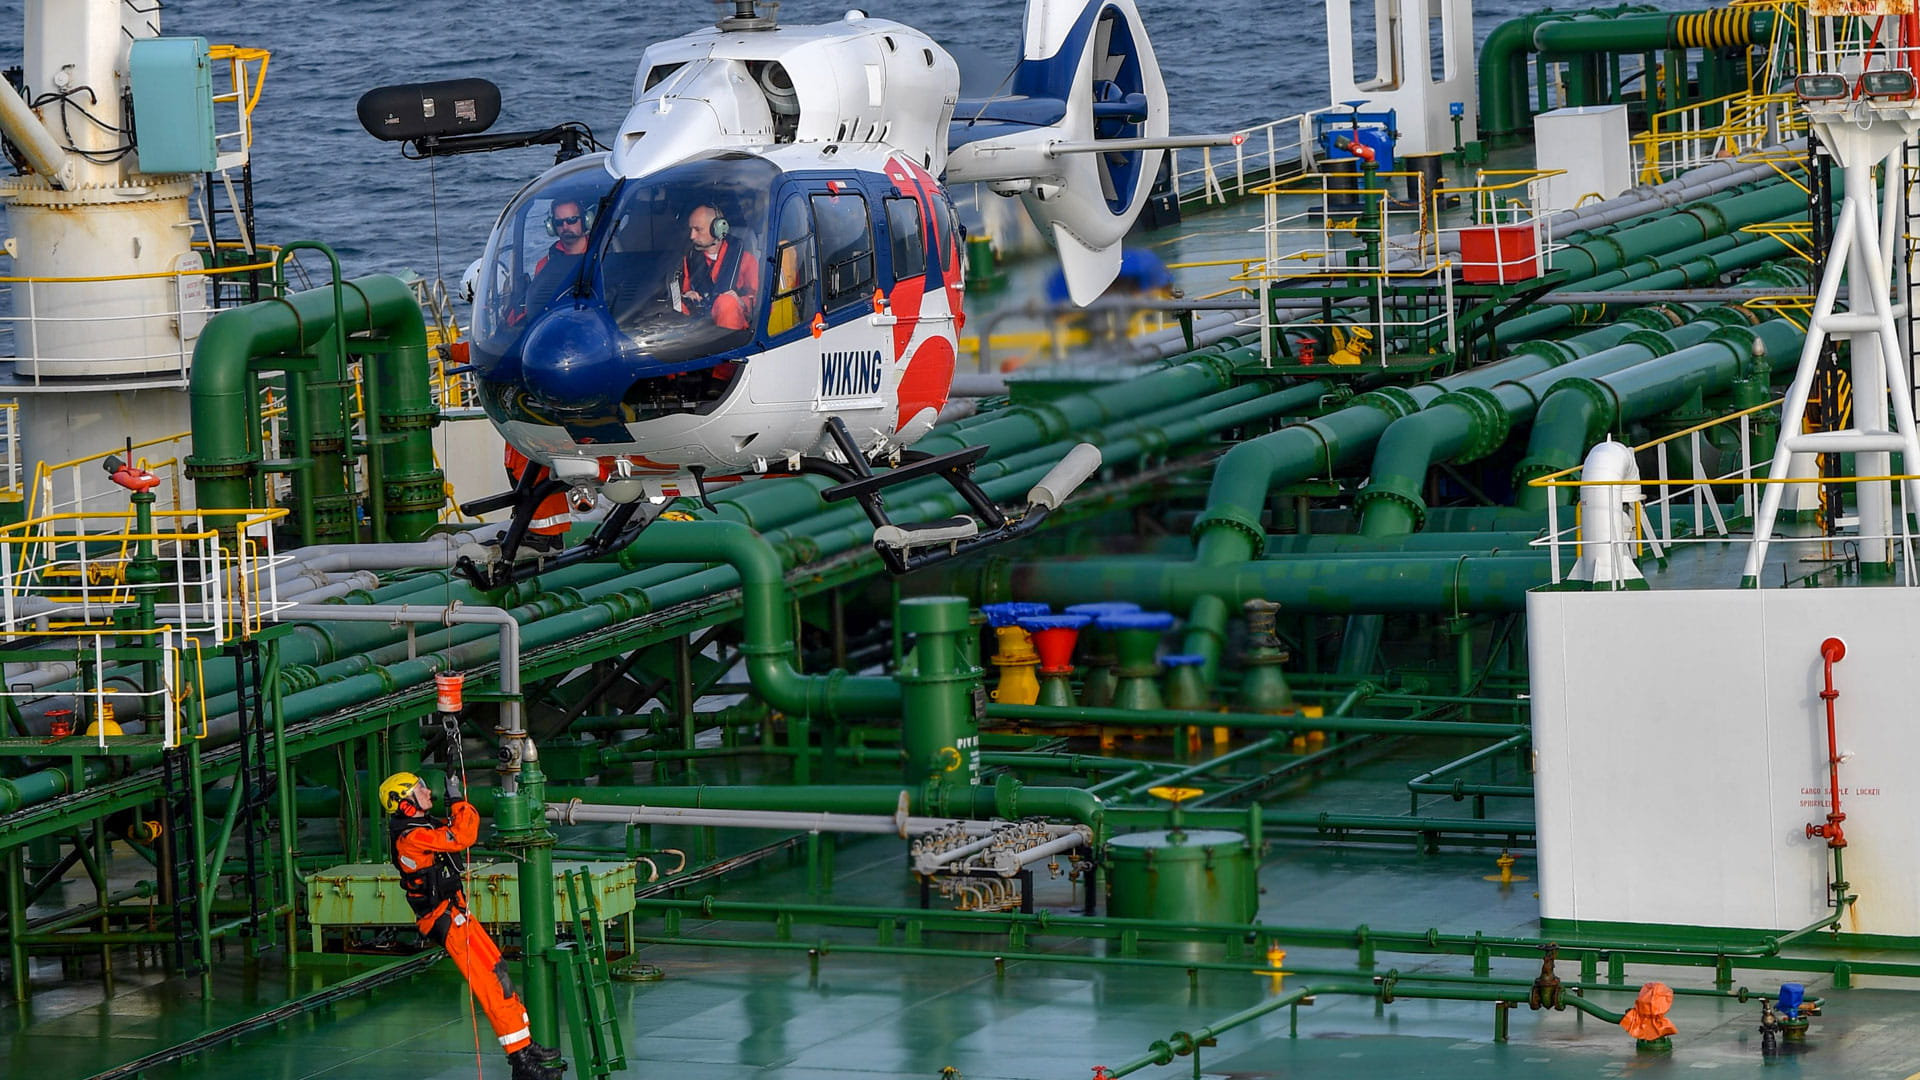 A helicopter lowers a man onto a ship via hoist